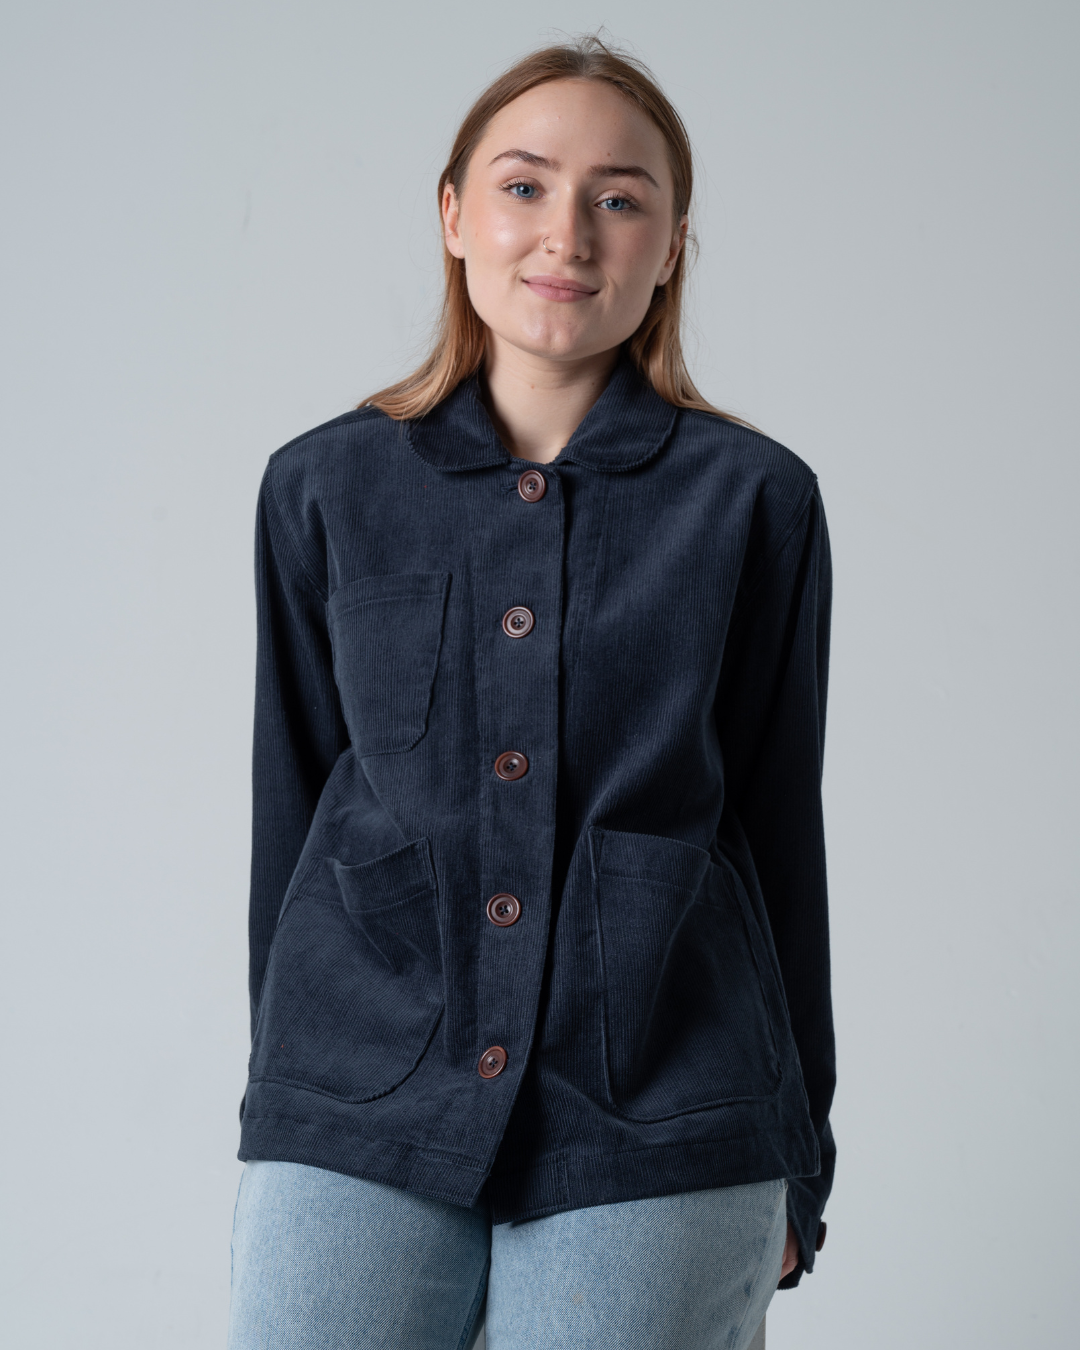 Womens Jacket | Jacket Style | Size 6-24 | sustainable fashion brand